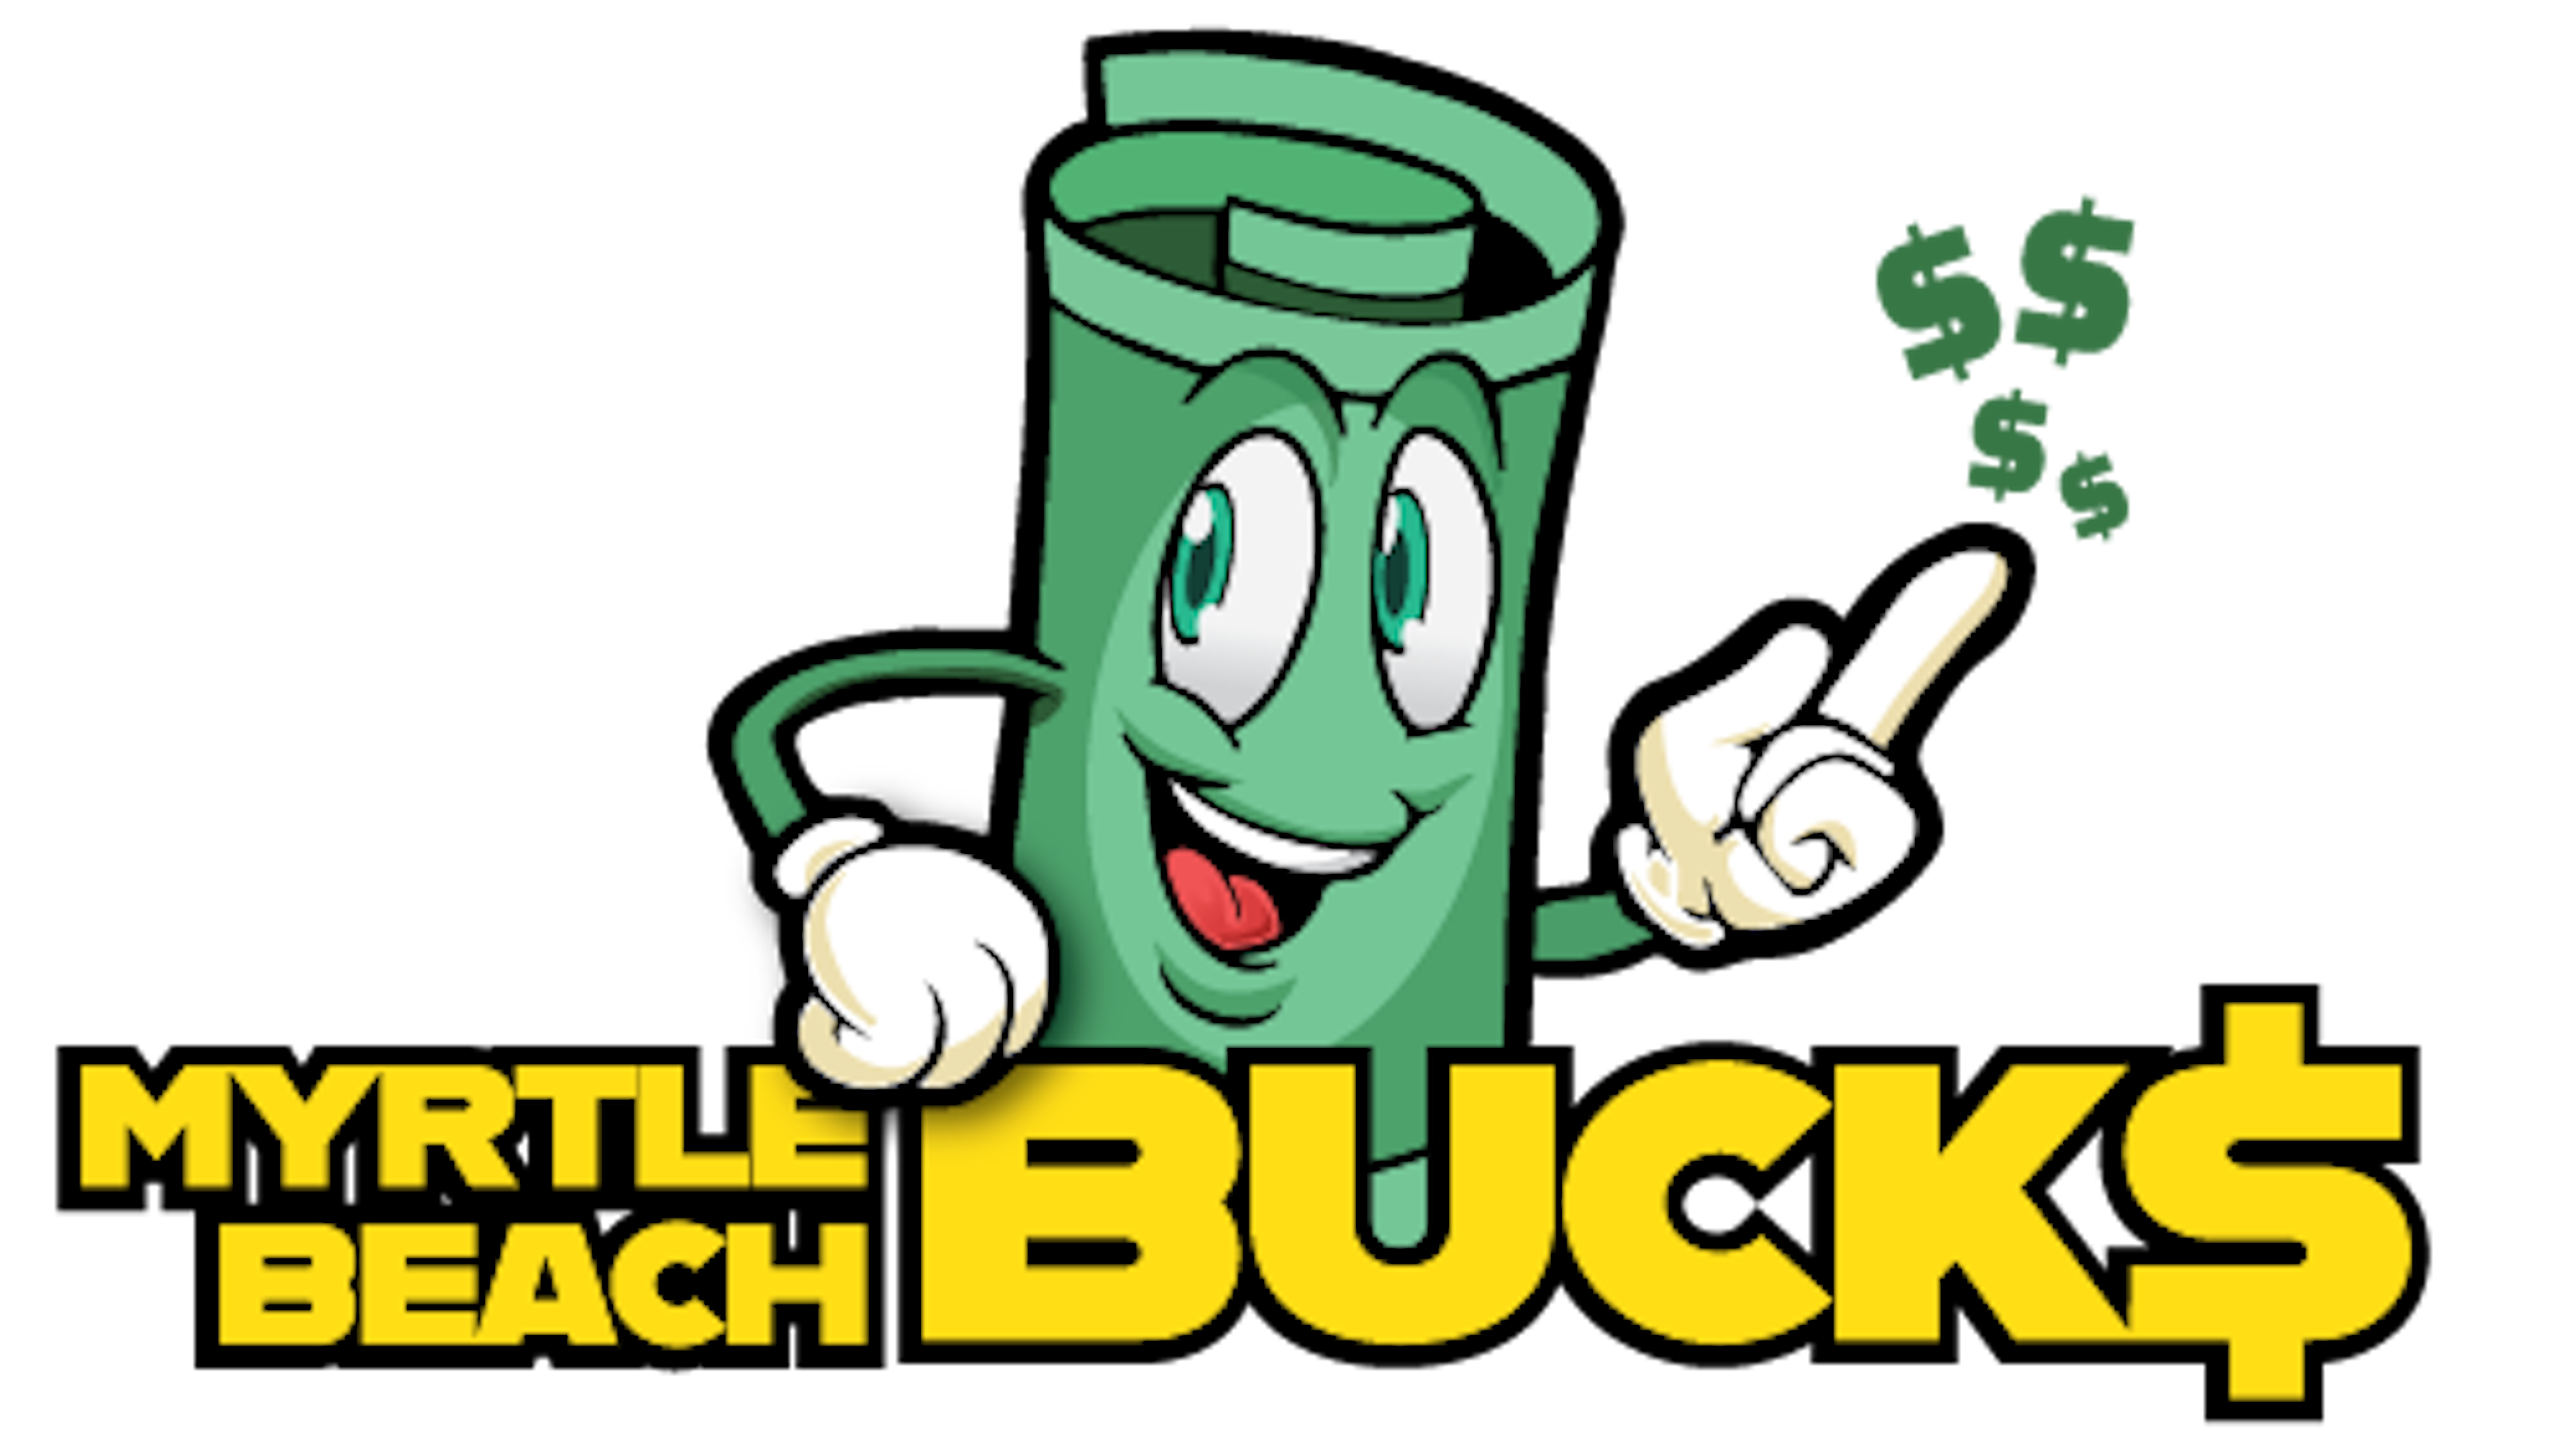 Myrtle Beach Bucks logo